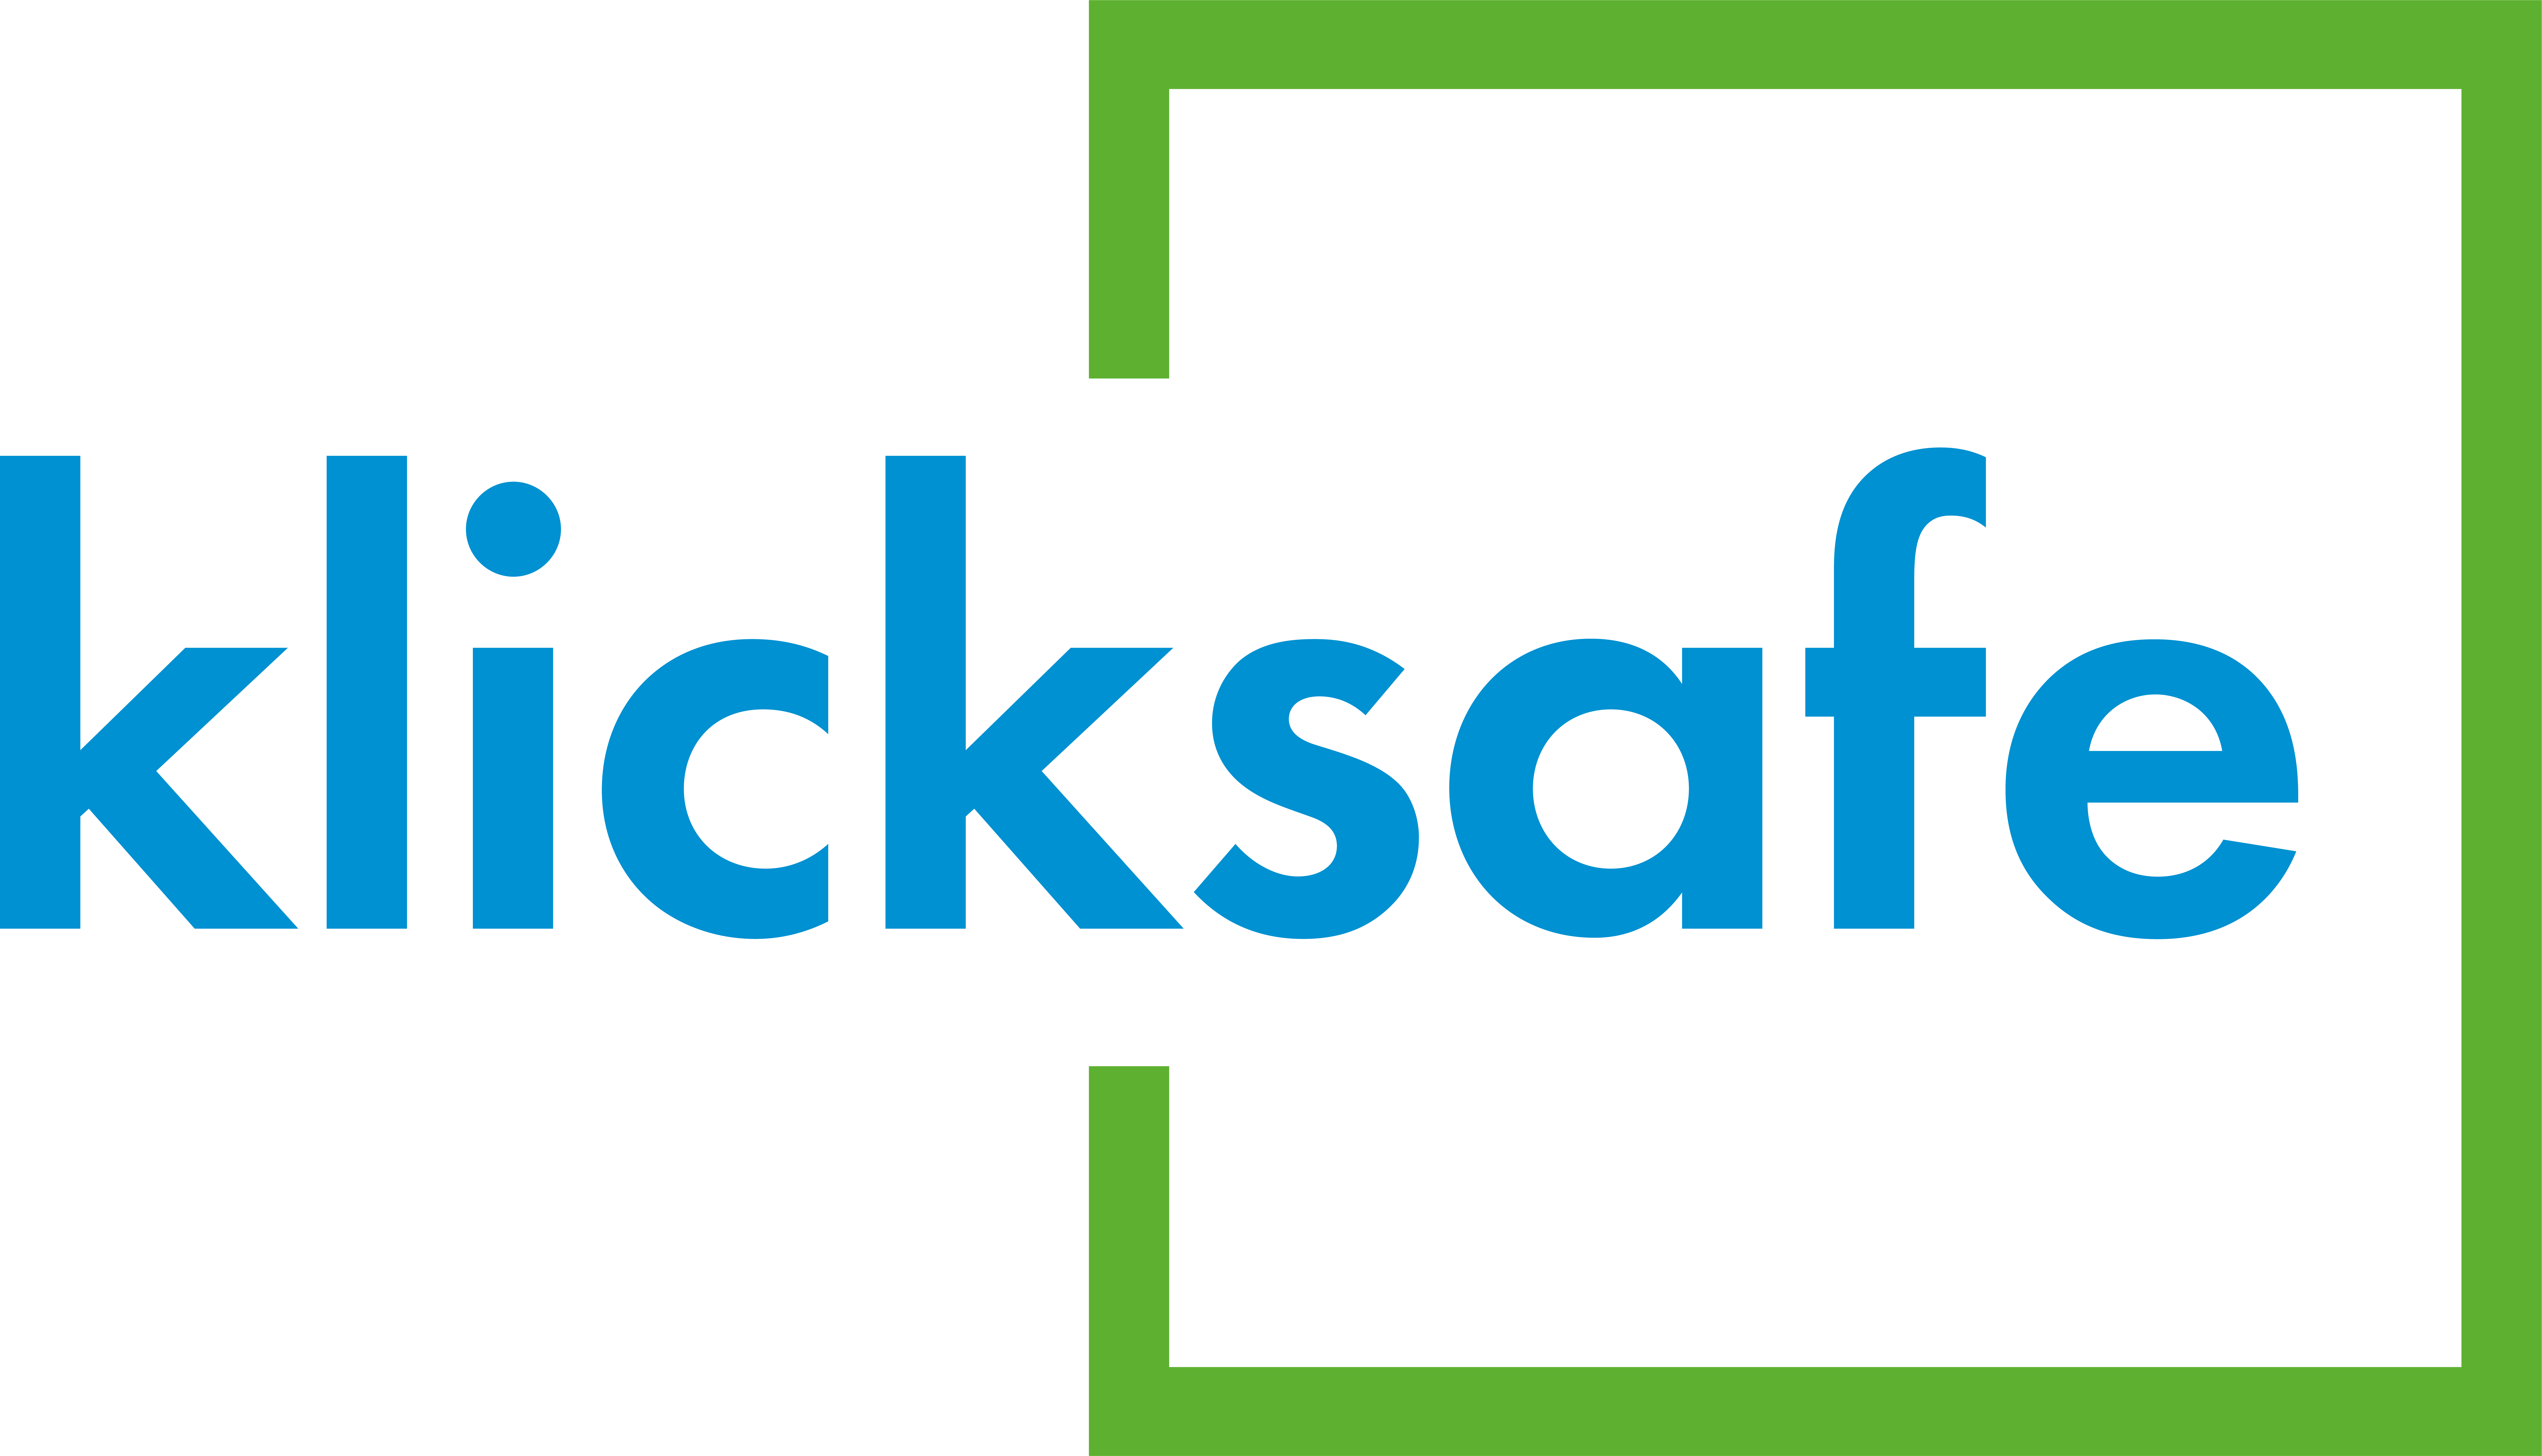 Porno klicksafe Logo no Claim